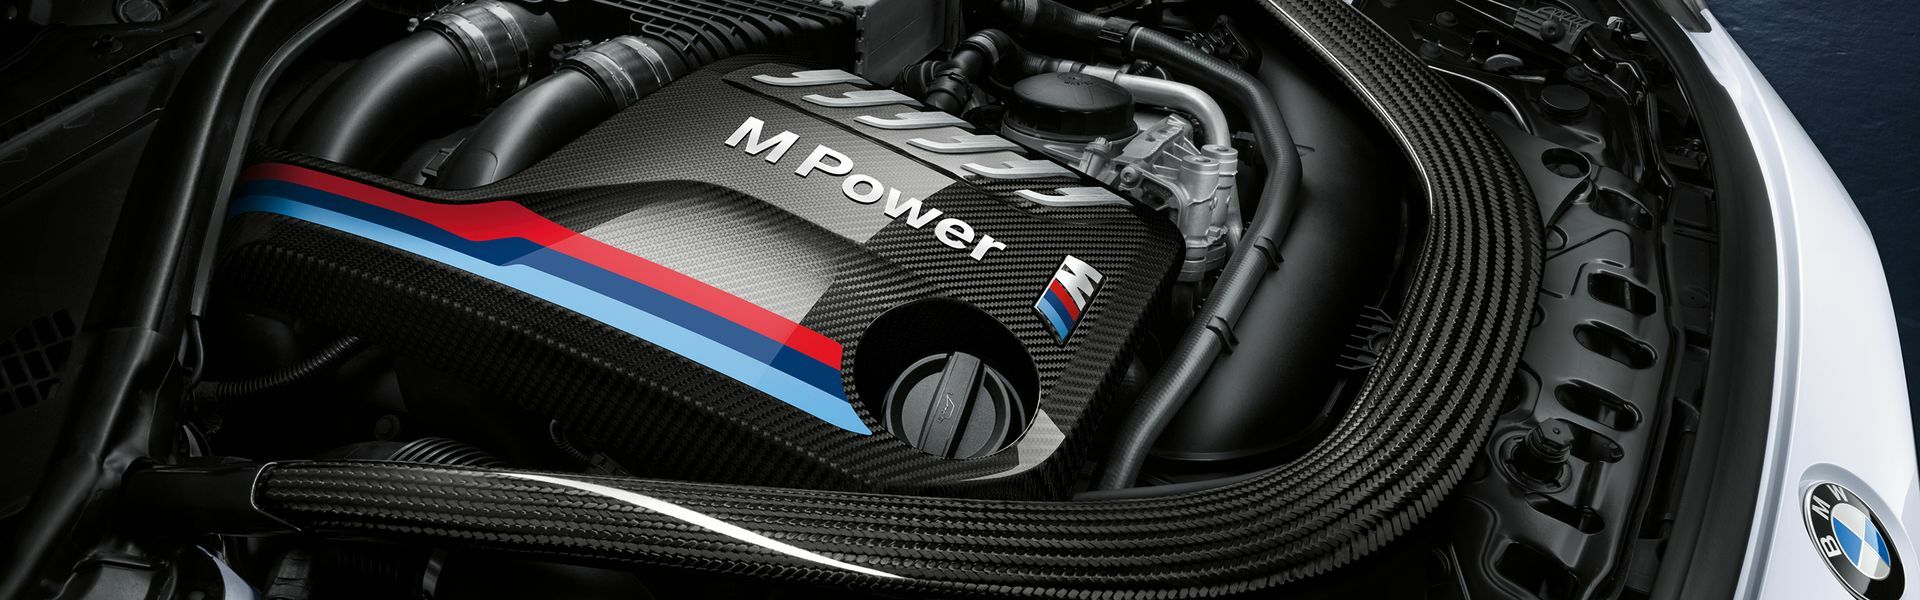 Zvýšení výkonu/ Softwarové úpravy/ Drobné performance díly pro automobil BMW Z4M